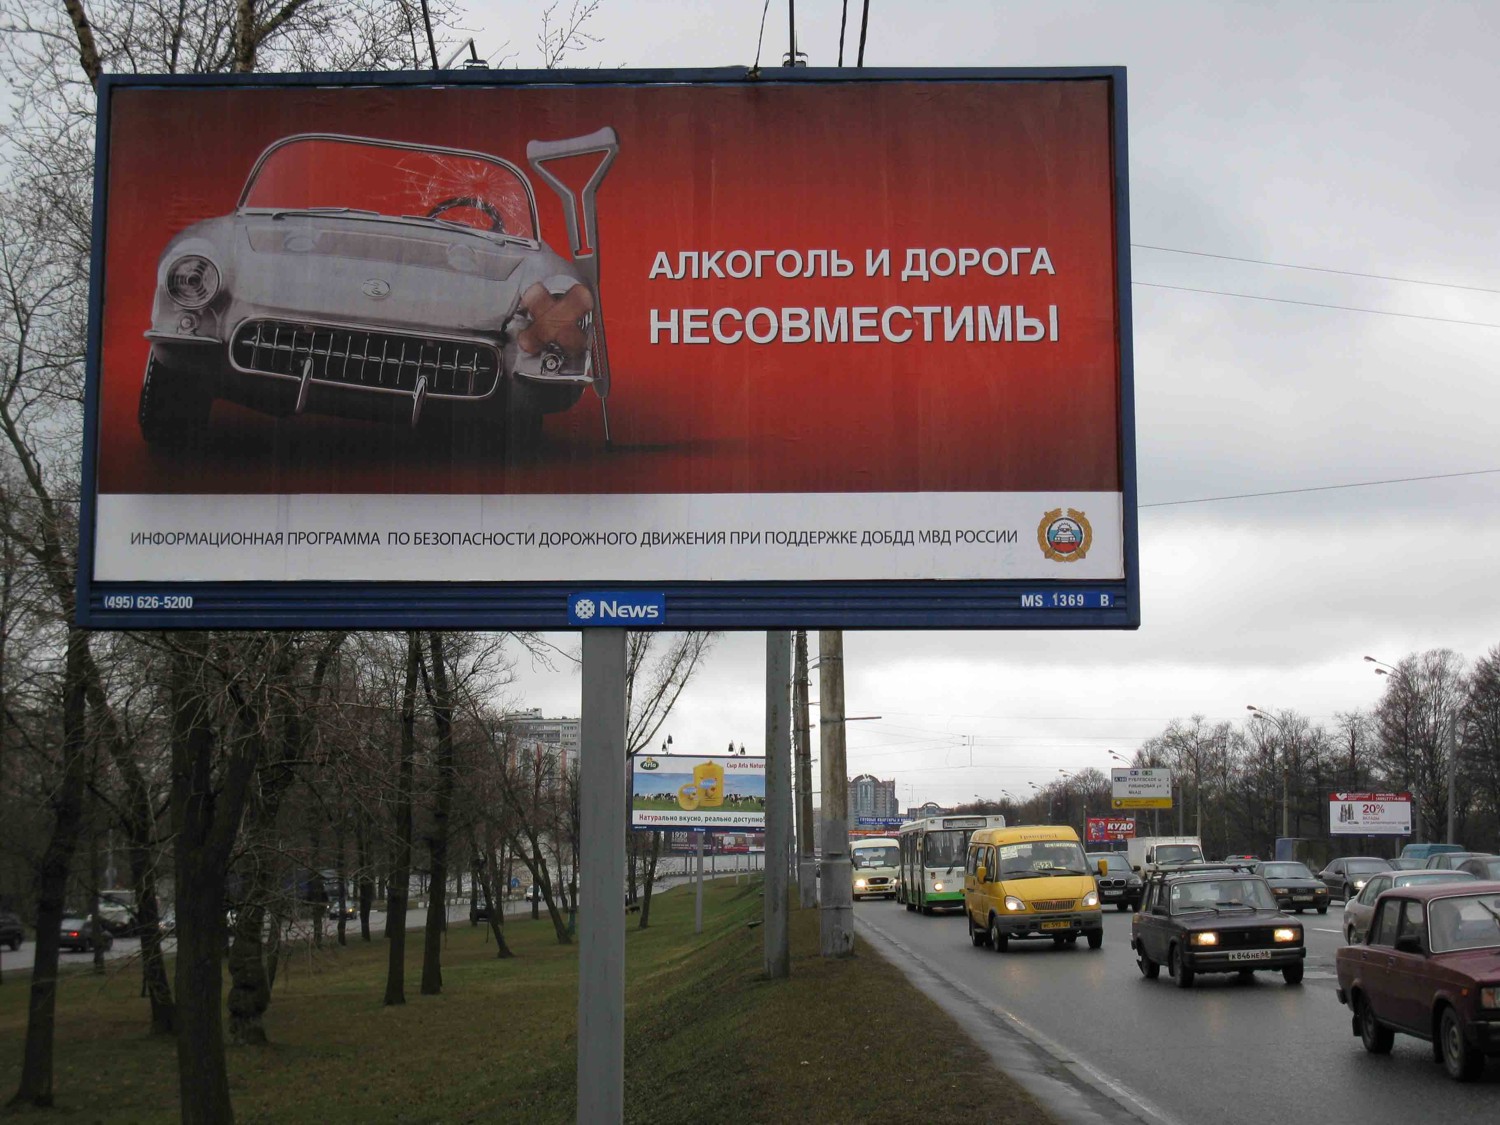 Рекламная движения. Рекламный баннер на дороге. Рекламный щит. Рекламный щит социальная реклама. Социальная реклама на дорогах.